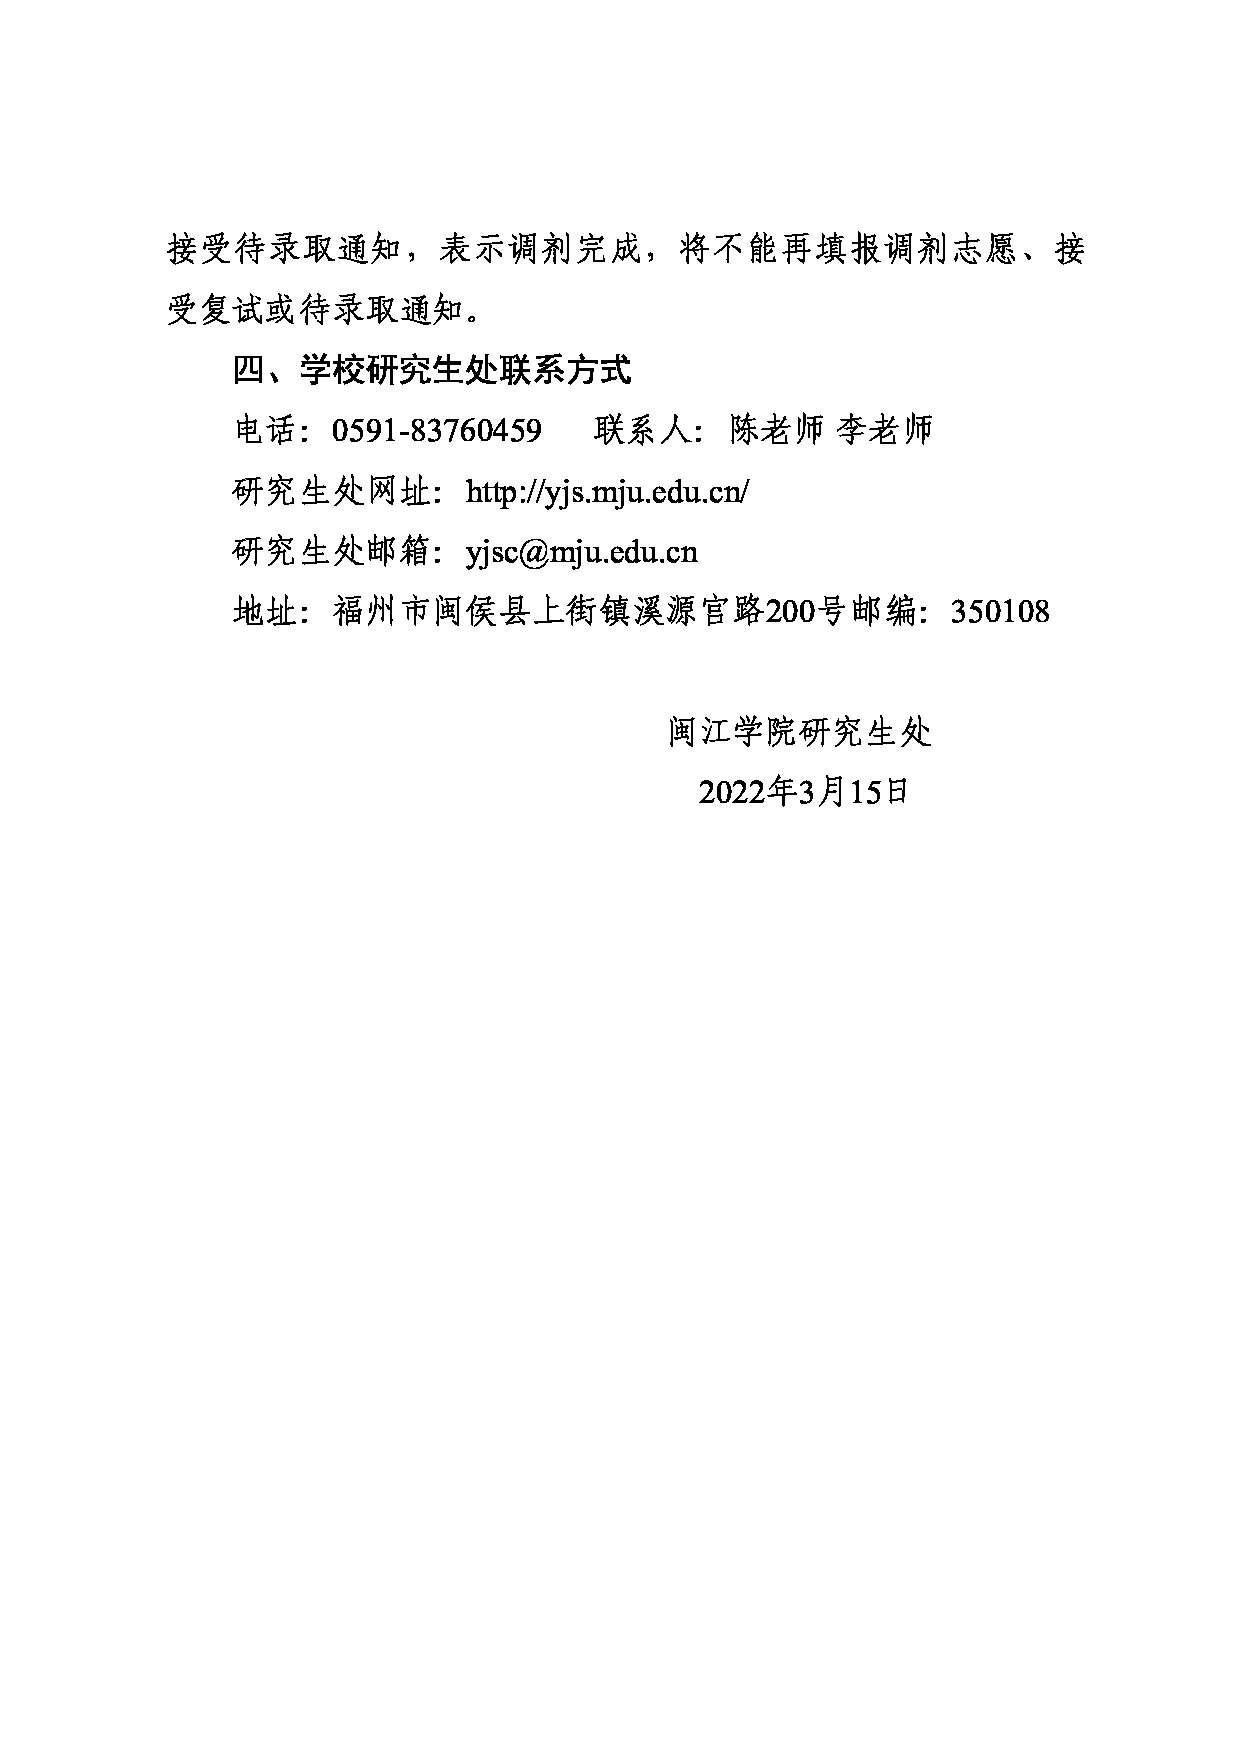 閩江學院2022年碩士研究生招生調劑預公告第3頁